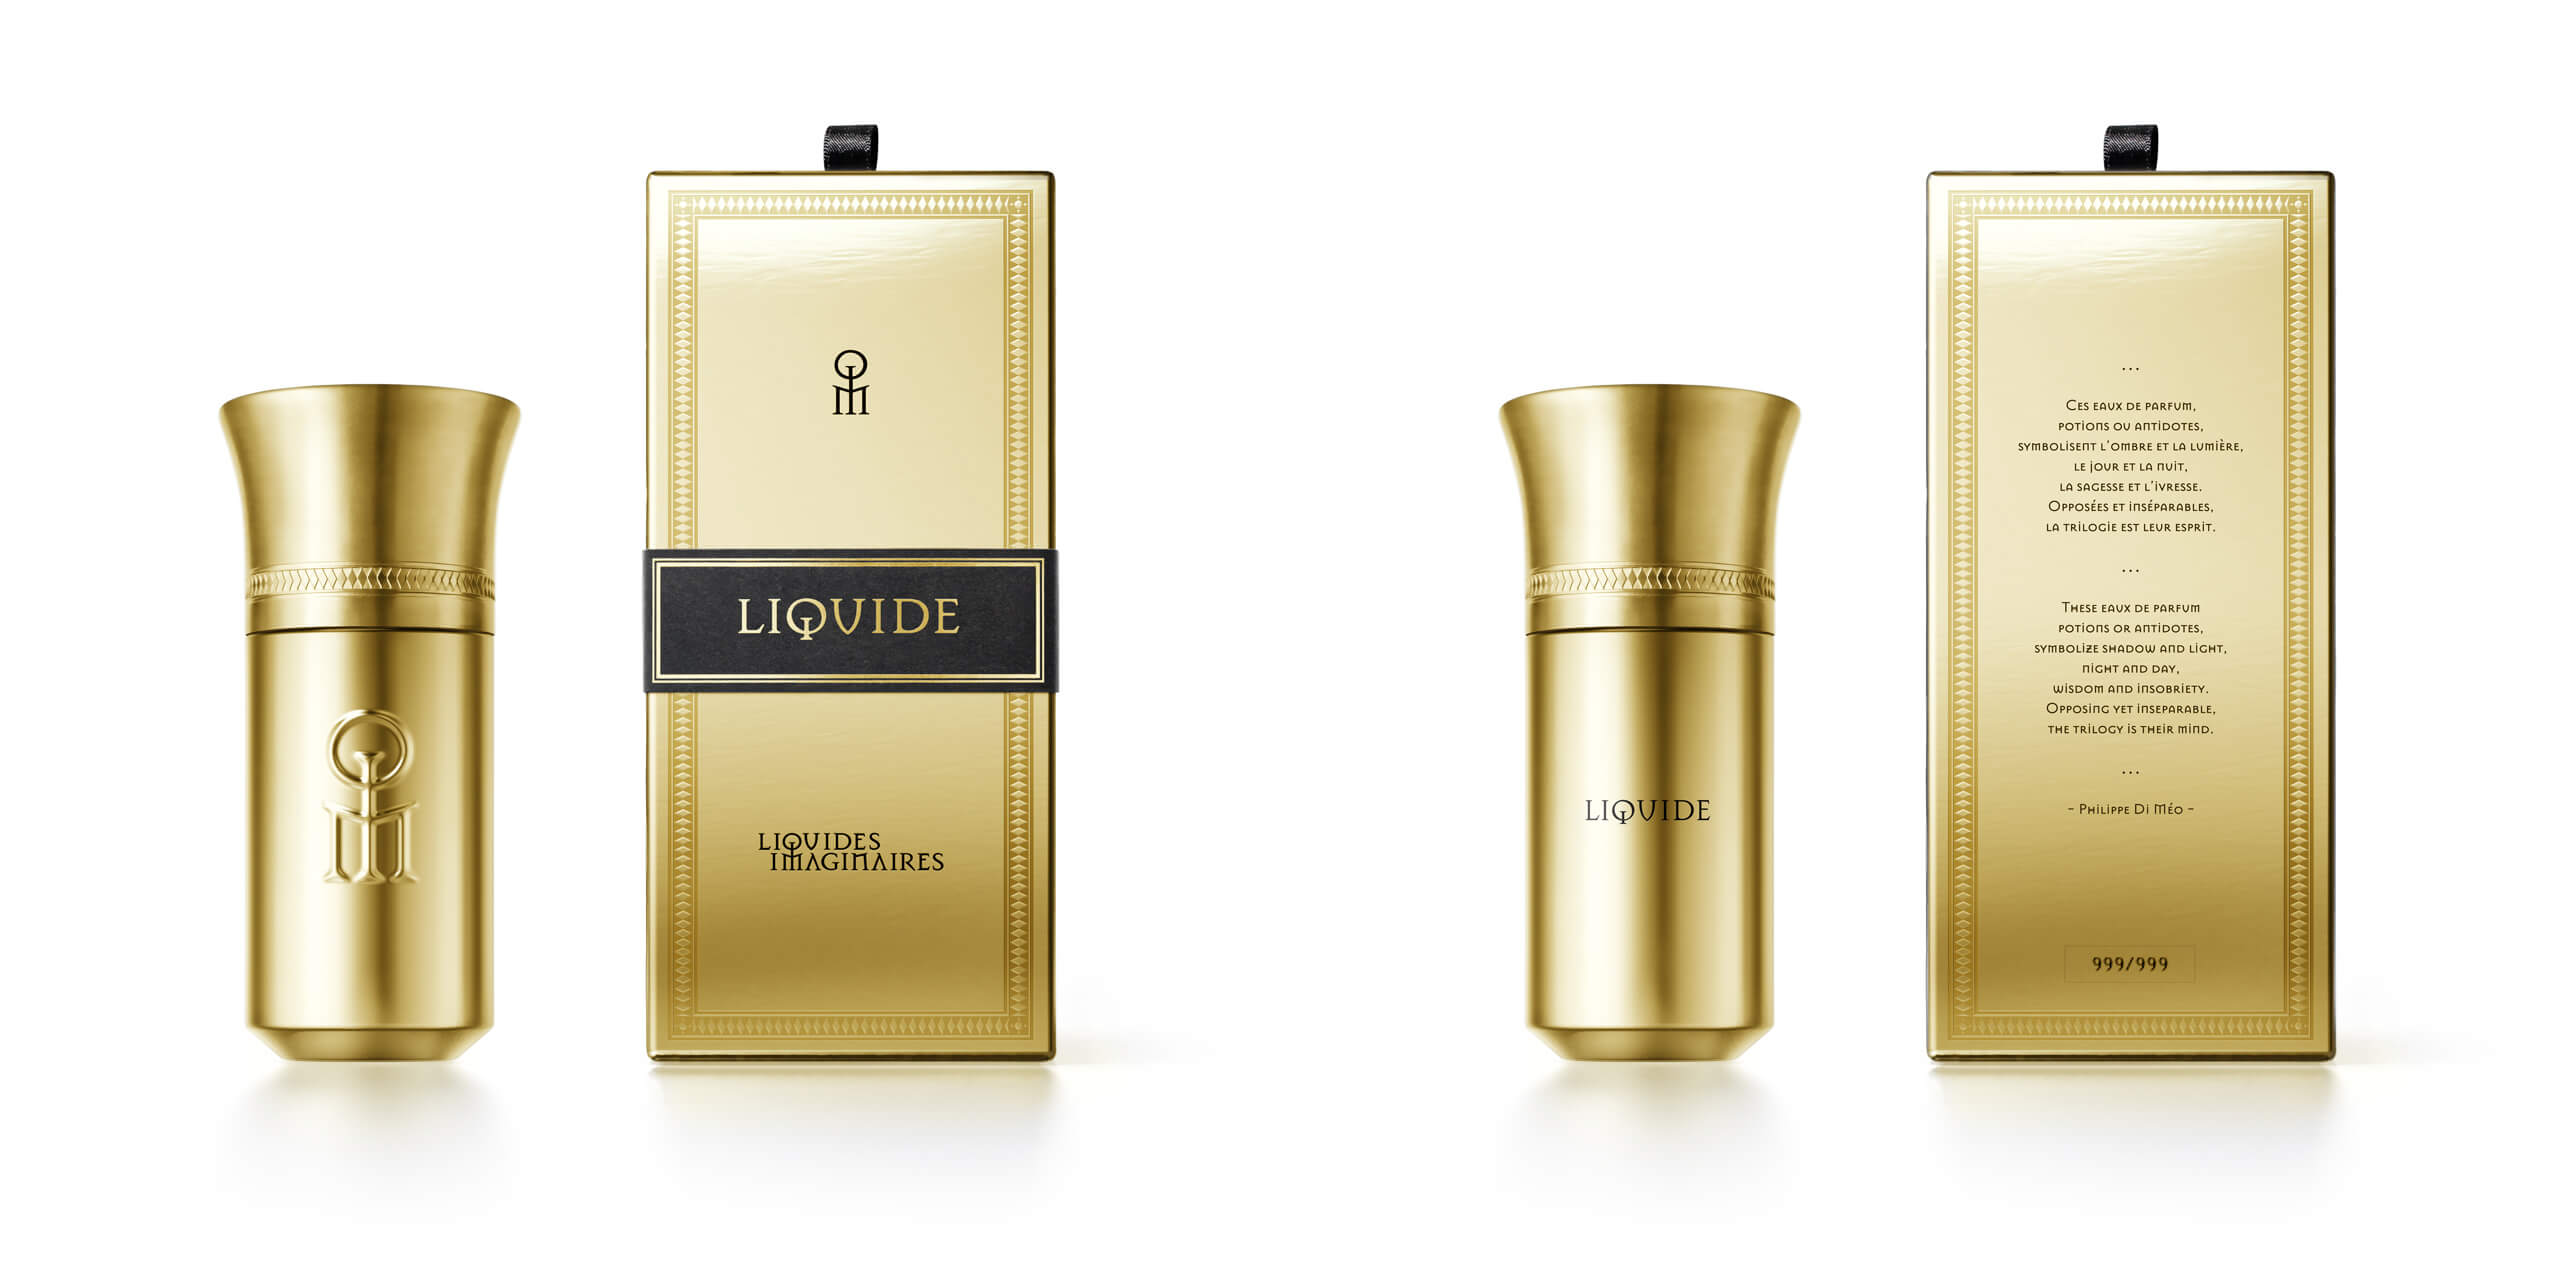 LIQUID GOLD 2022 リキッドゴールド Liquides Imaginaires リキッドイマジネール 香水 正規販売店 通販 ムエット 取り寄せ無料